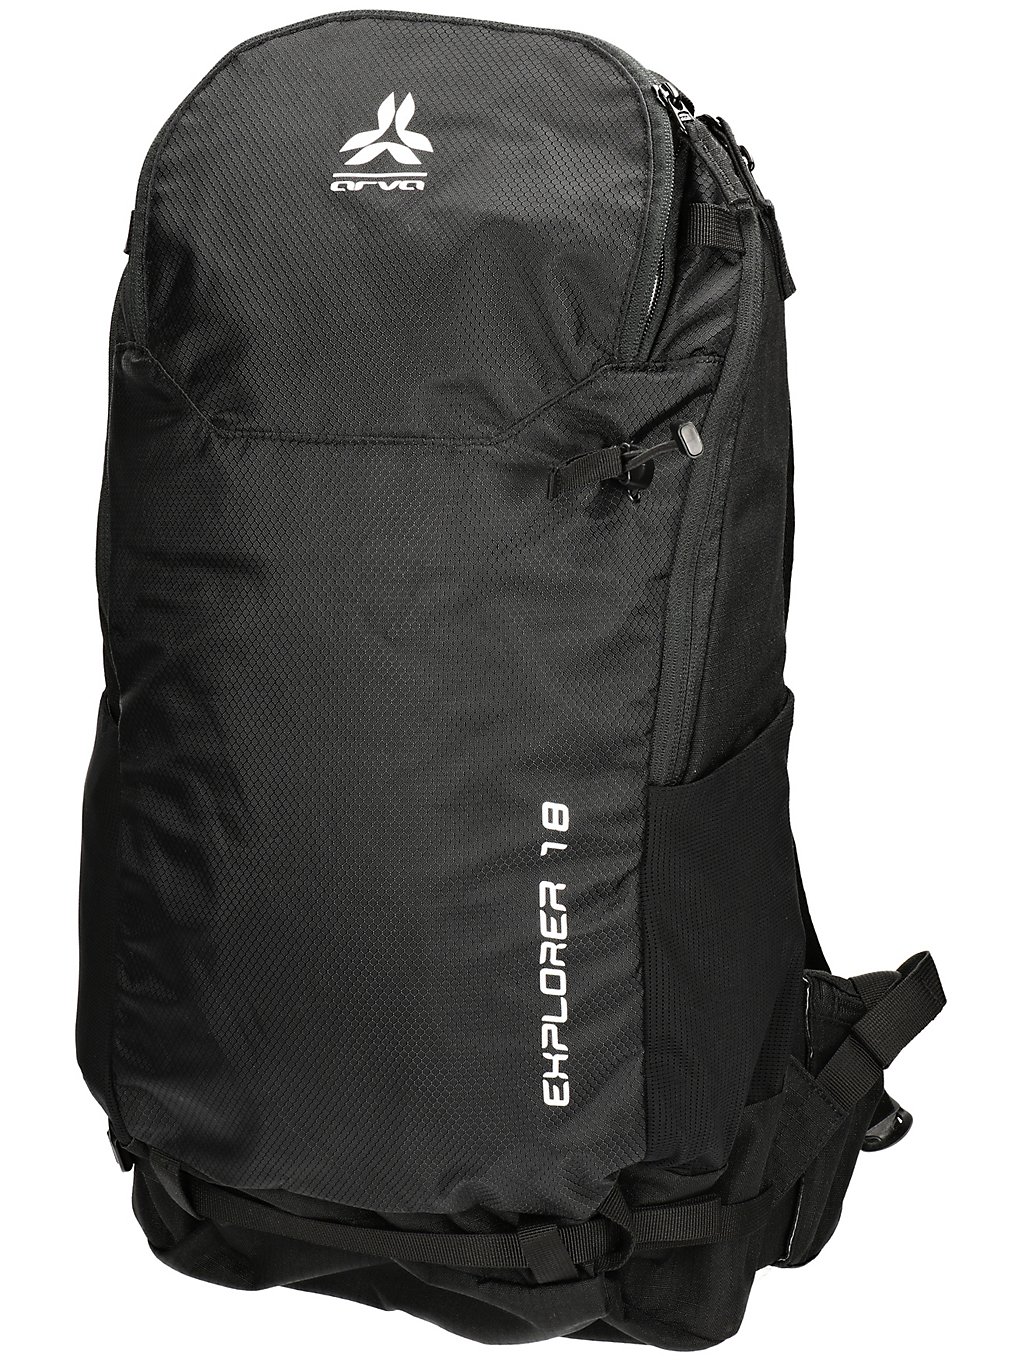 Arva Explorer 18L Backpack black